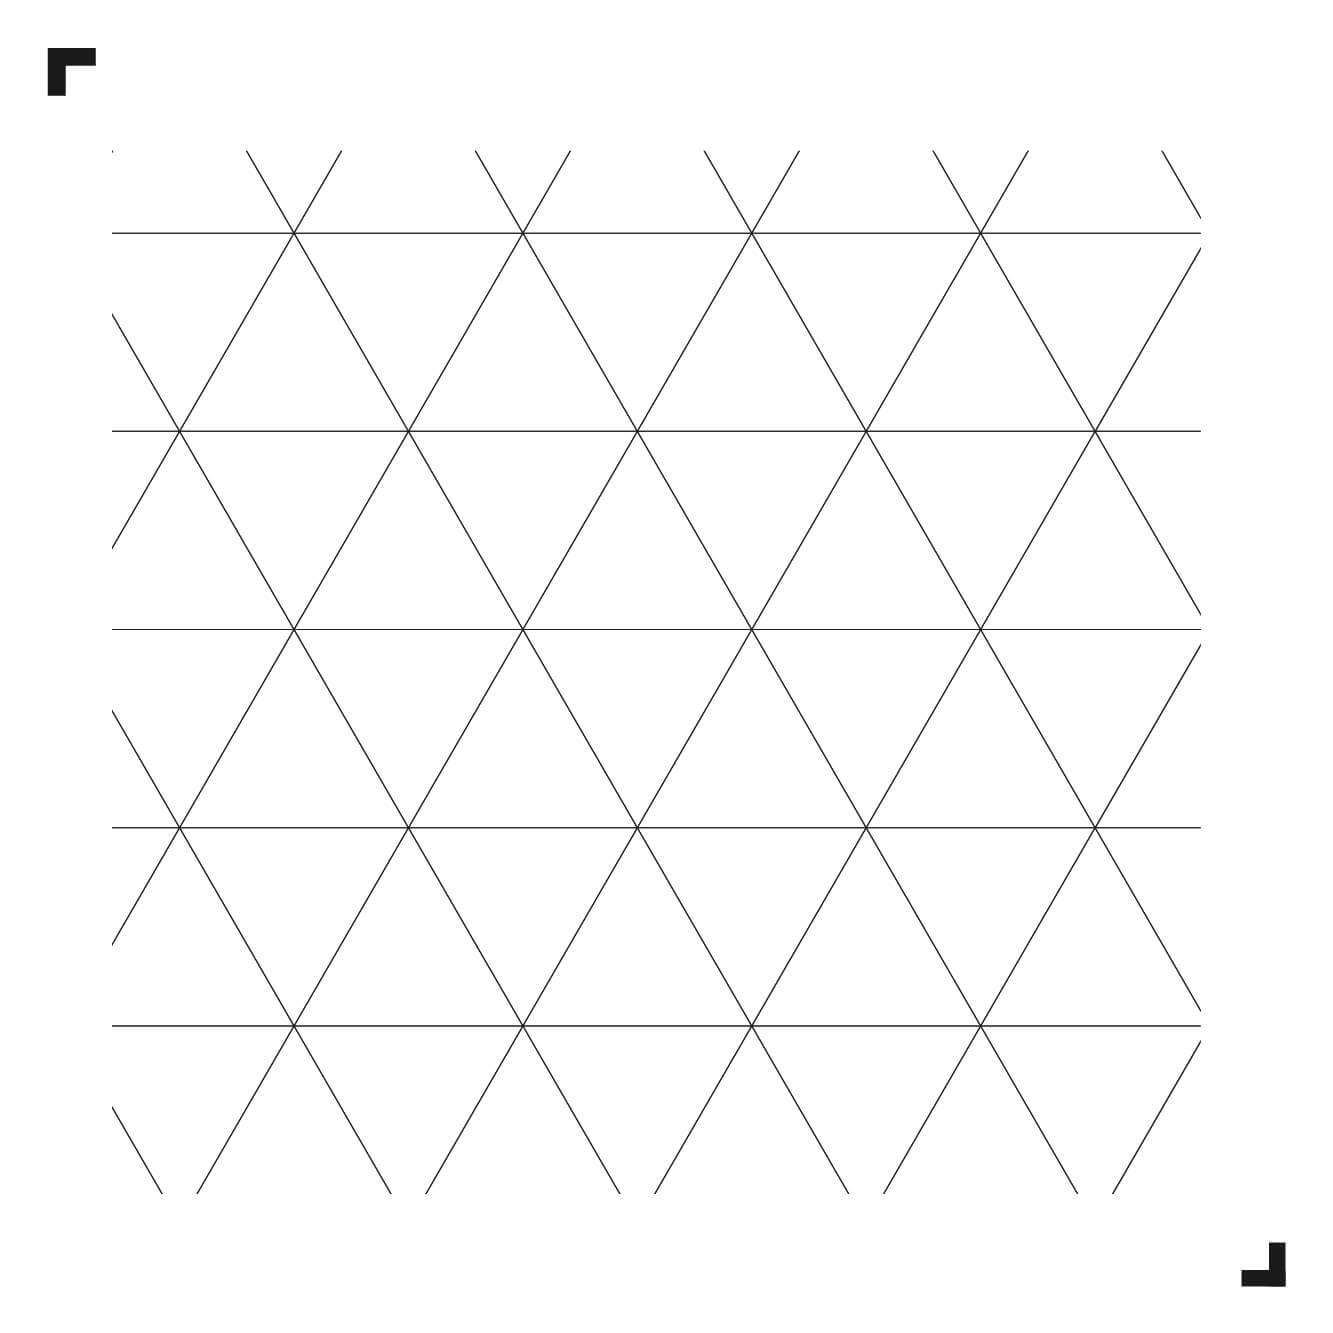 zwart-wit tekening van het Triangle patroon - Moduleo Moods - luxe vinyl tegels - Creatieve vloeren